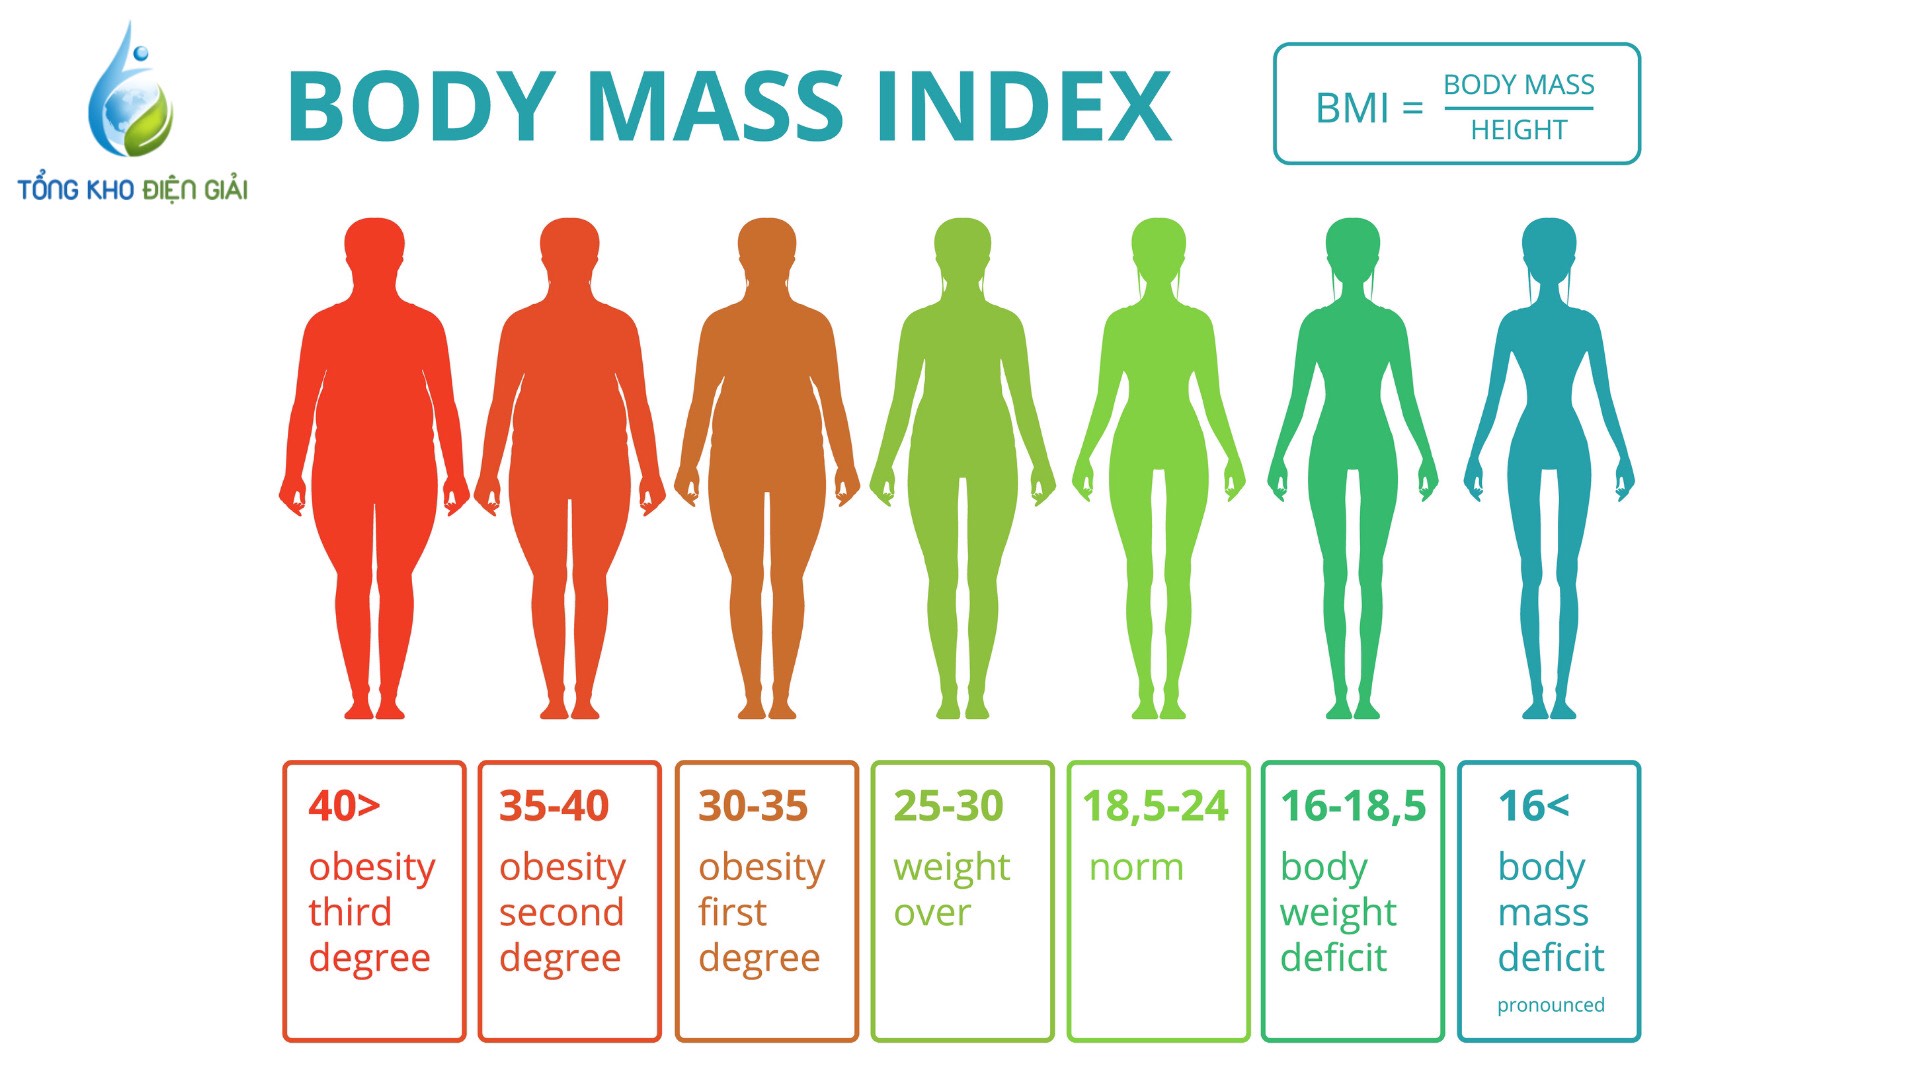 Chỉ số BMI của nam chuẩn